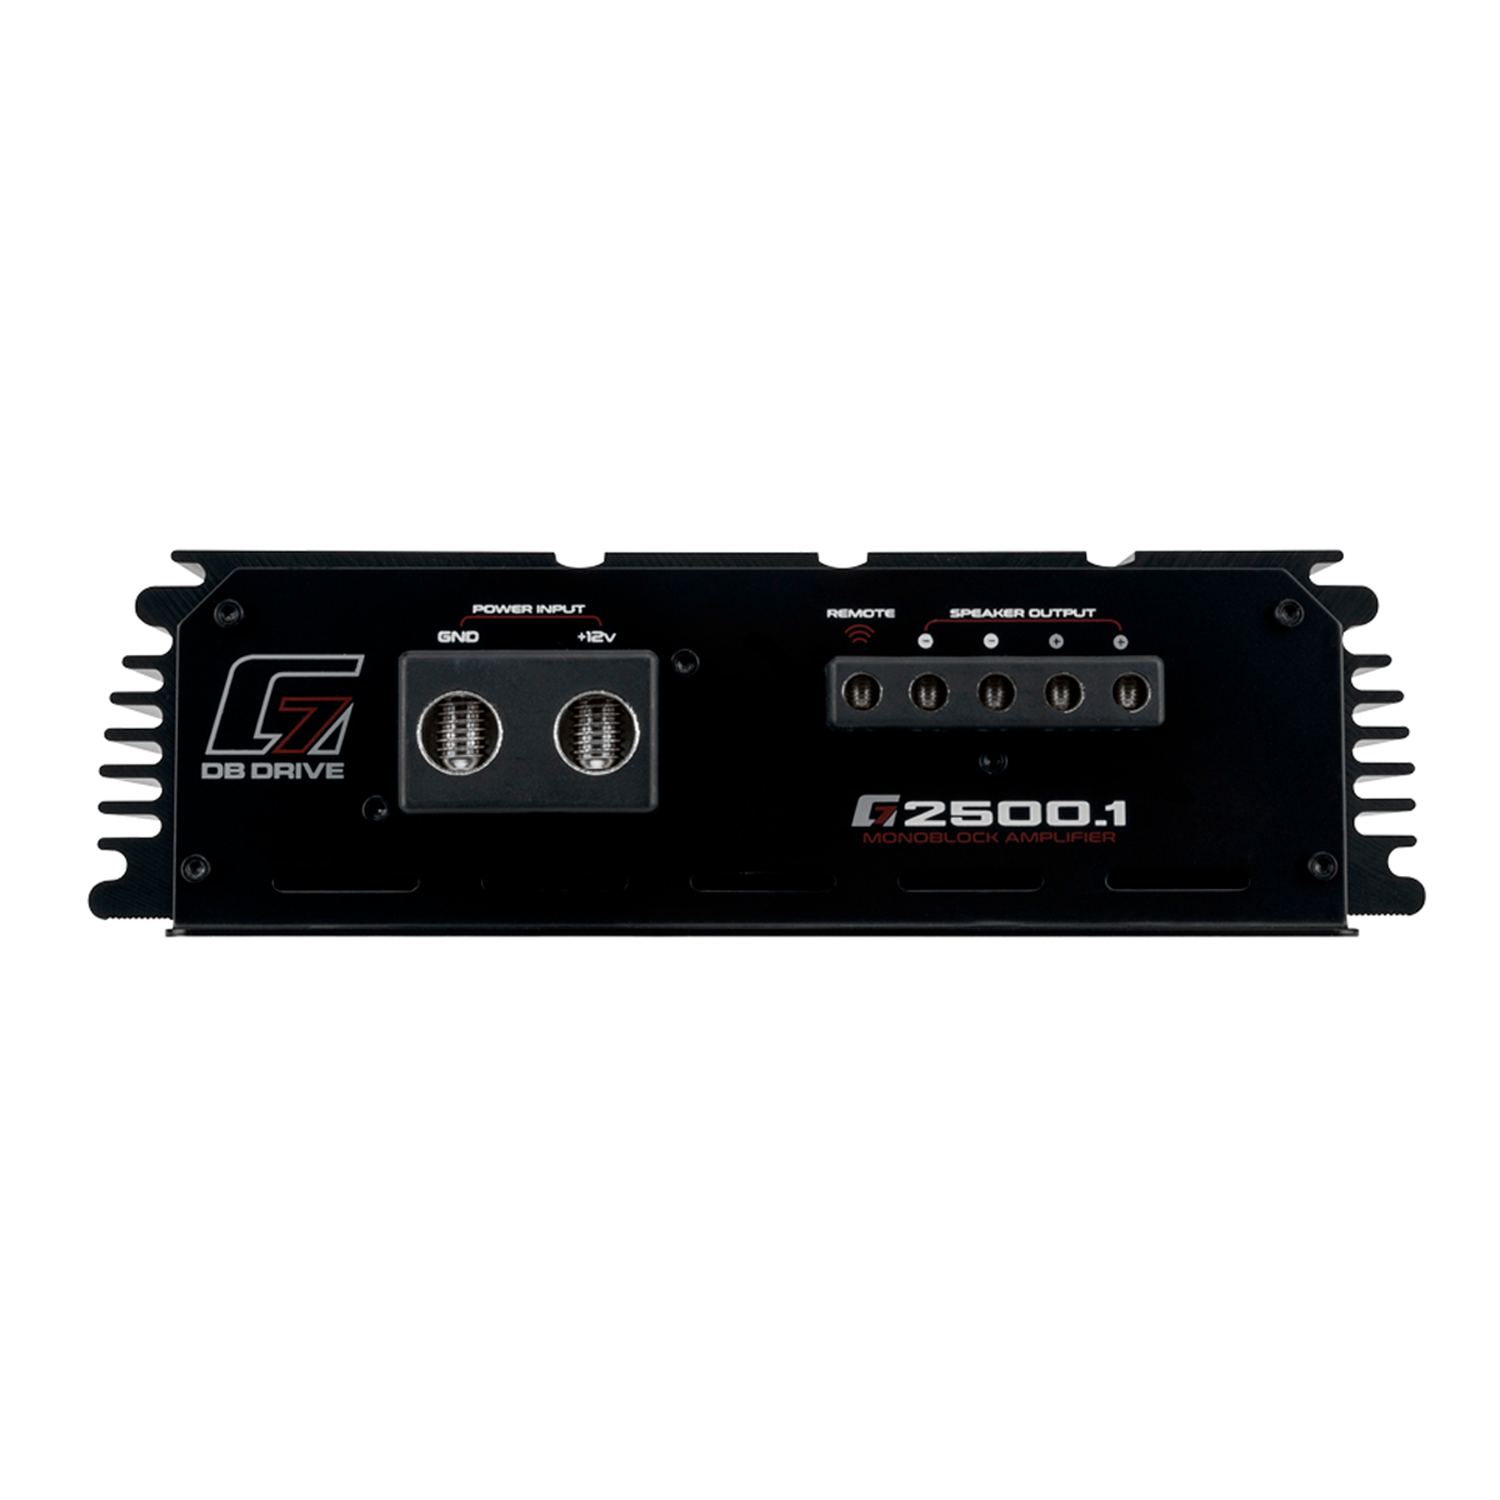 Amplificador Db Drive clase D monobloque de 2500w G72500.1